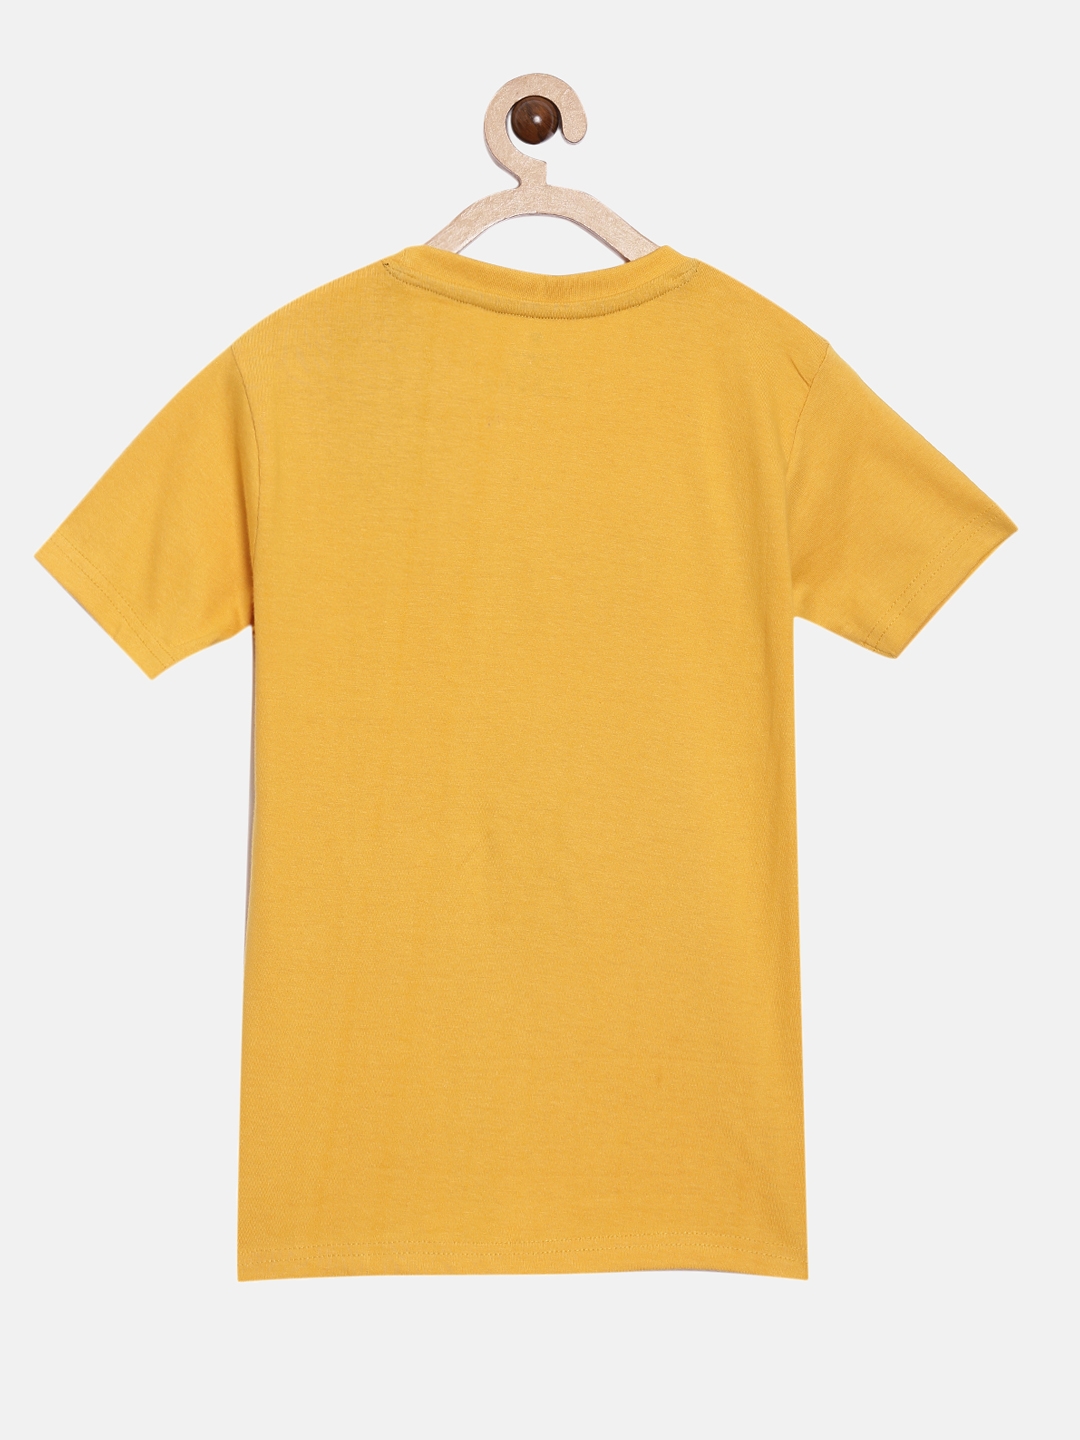 Peejas 100% Cotton Boys  Printed Round Neck Short Sleeves Tshirts